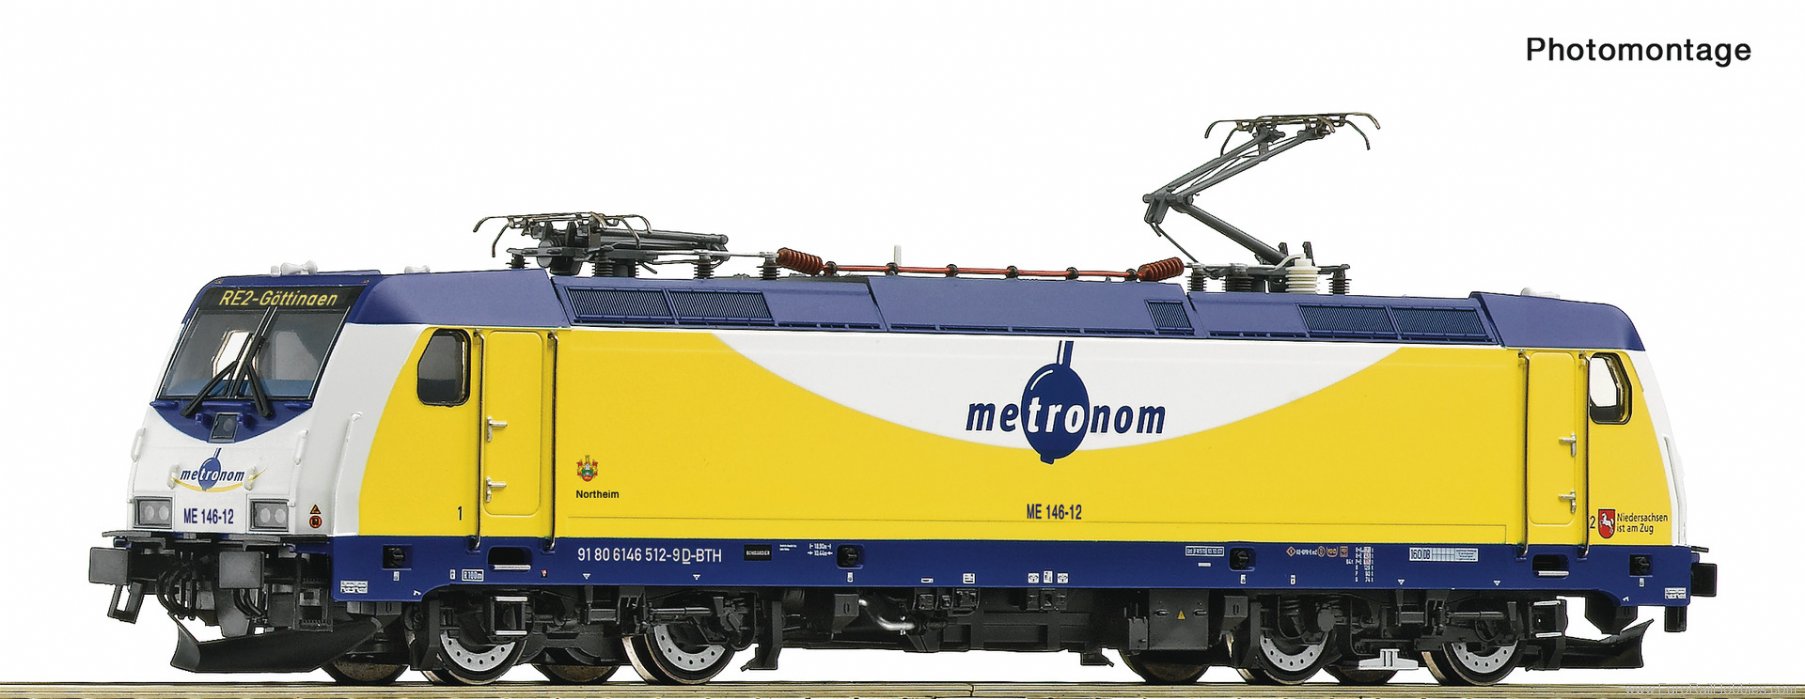 Roco 7510037 Electric locomotive ME 146-12, metronom (DCC 